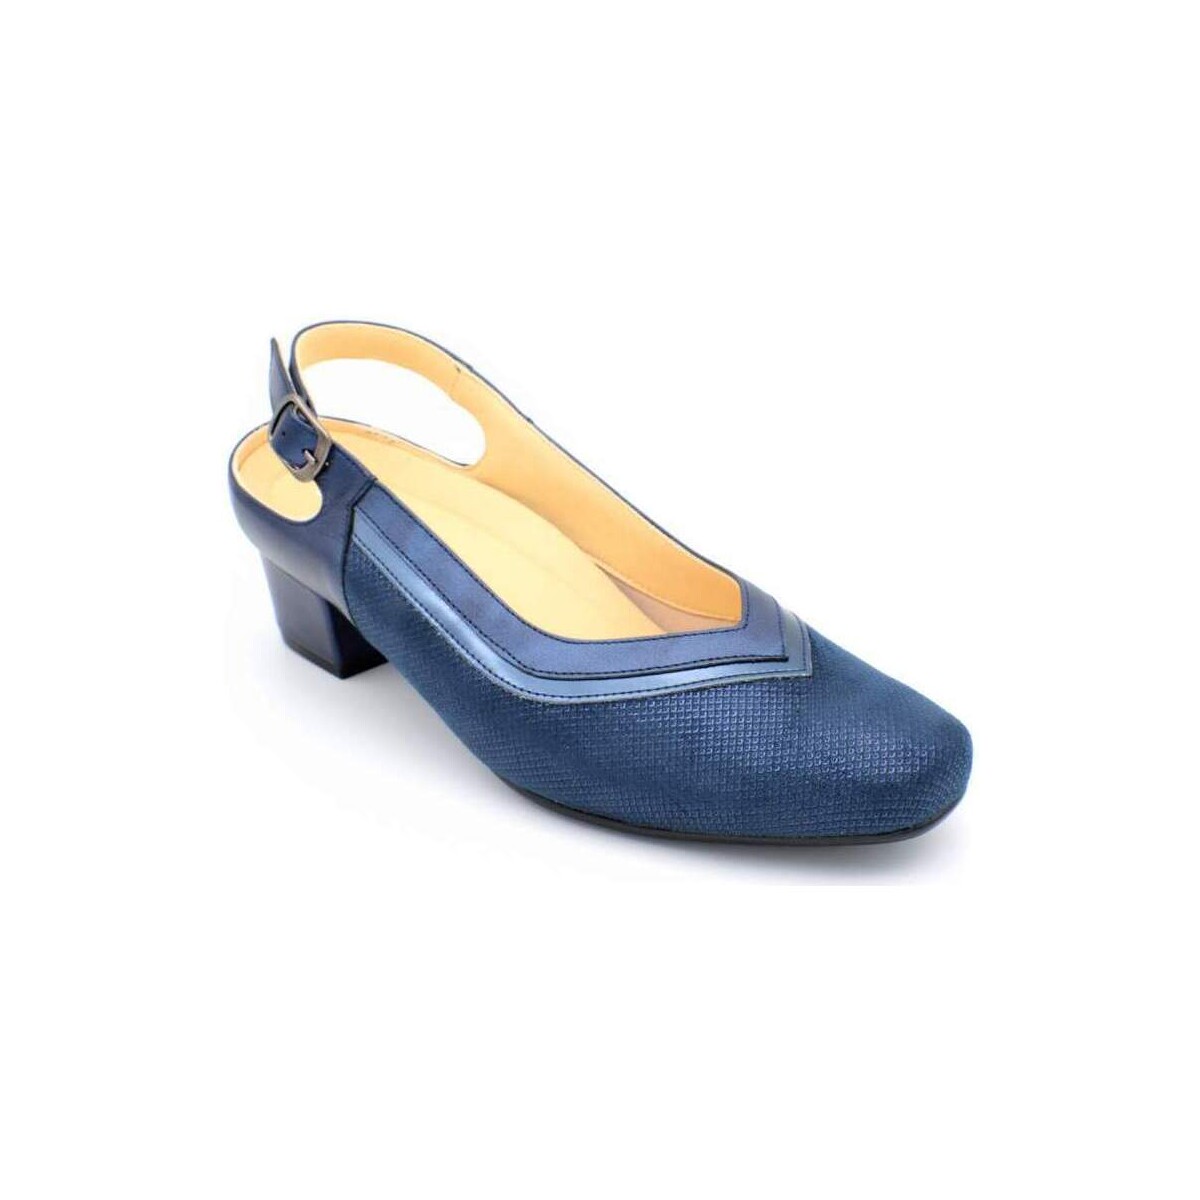 Schuhe Damen Ballerinas Doctor Cutillas 81195 Blau